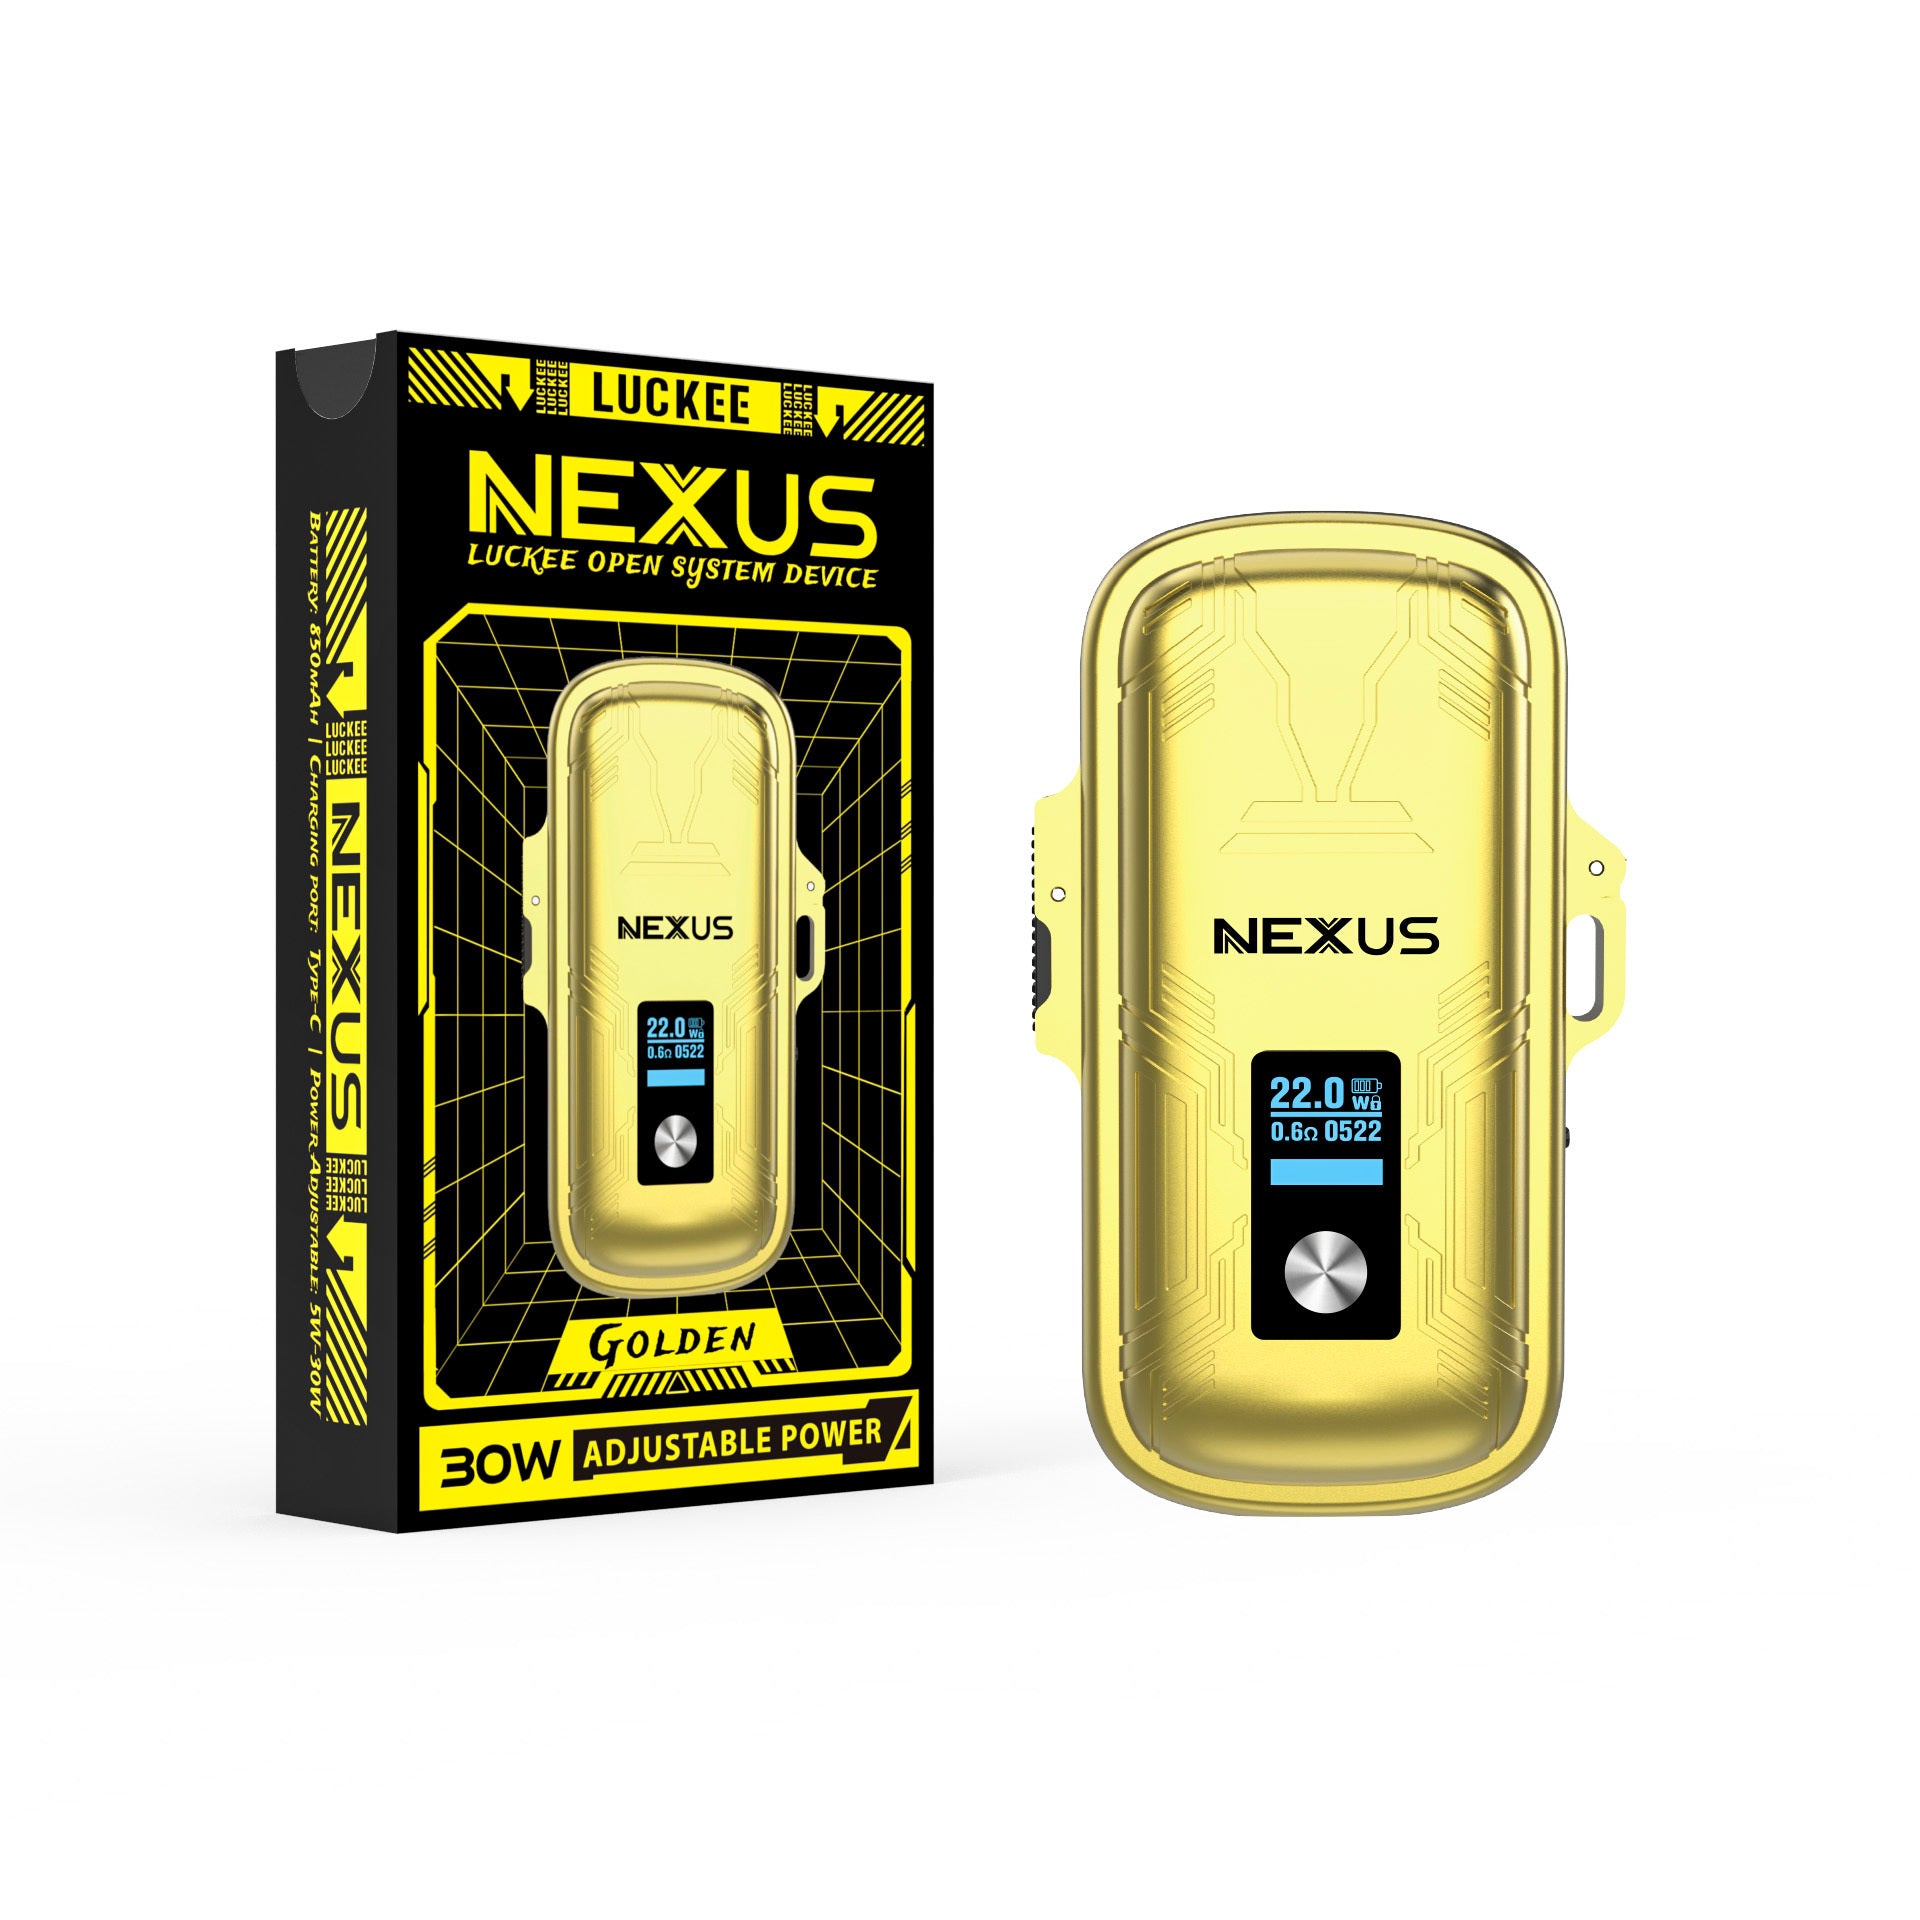 Nexus Suit Pod Device System Wholesale